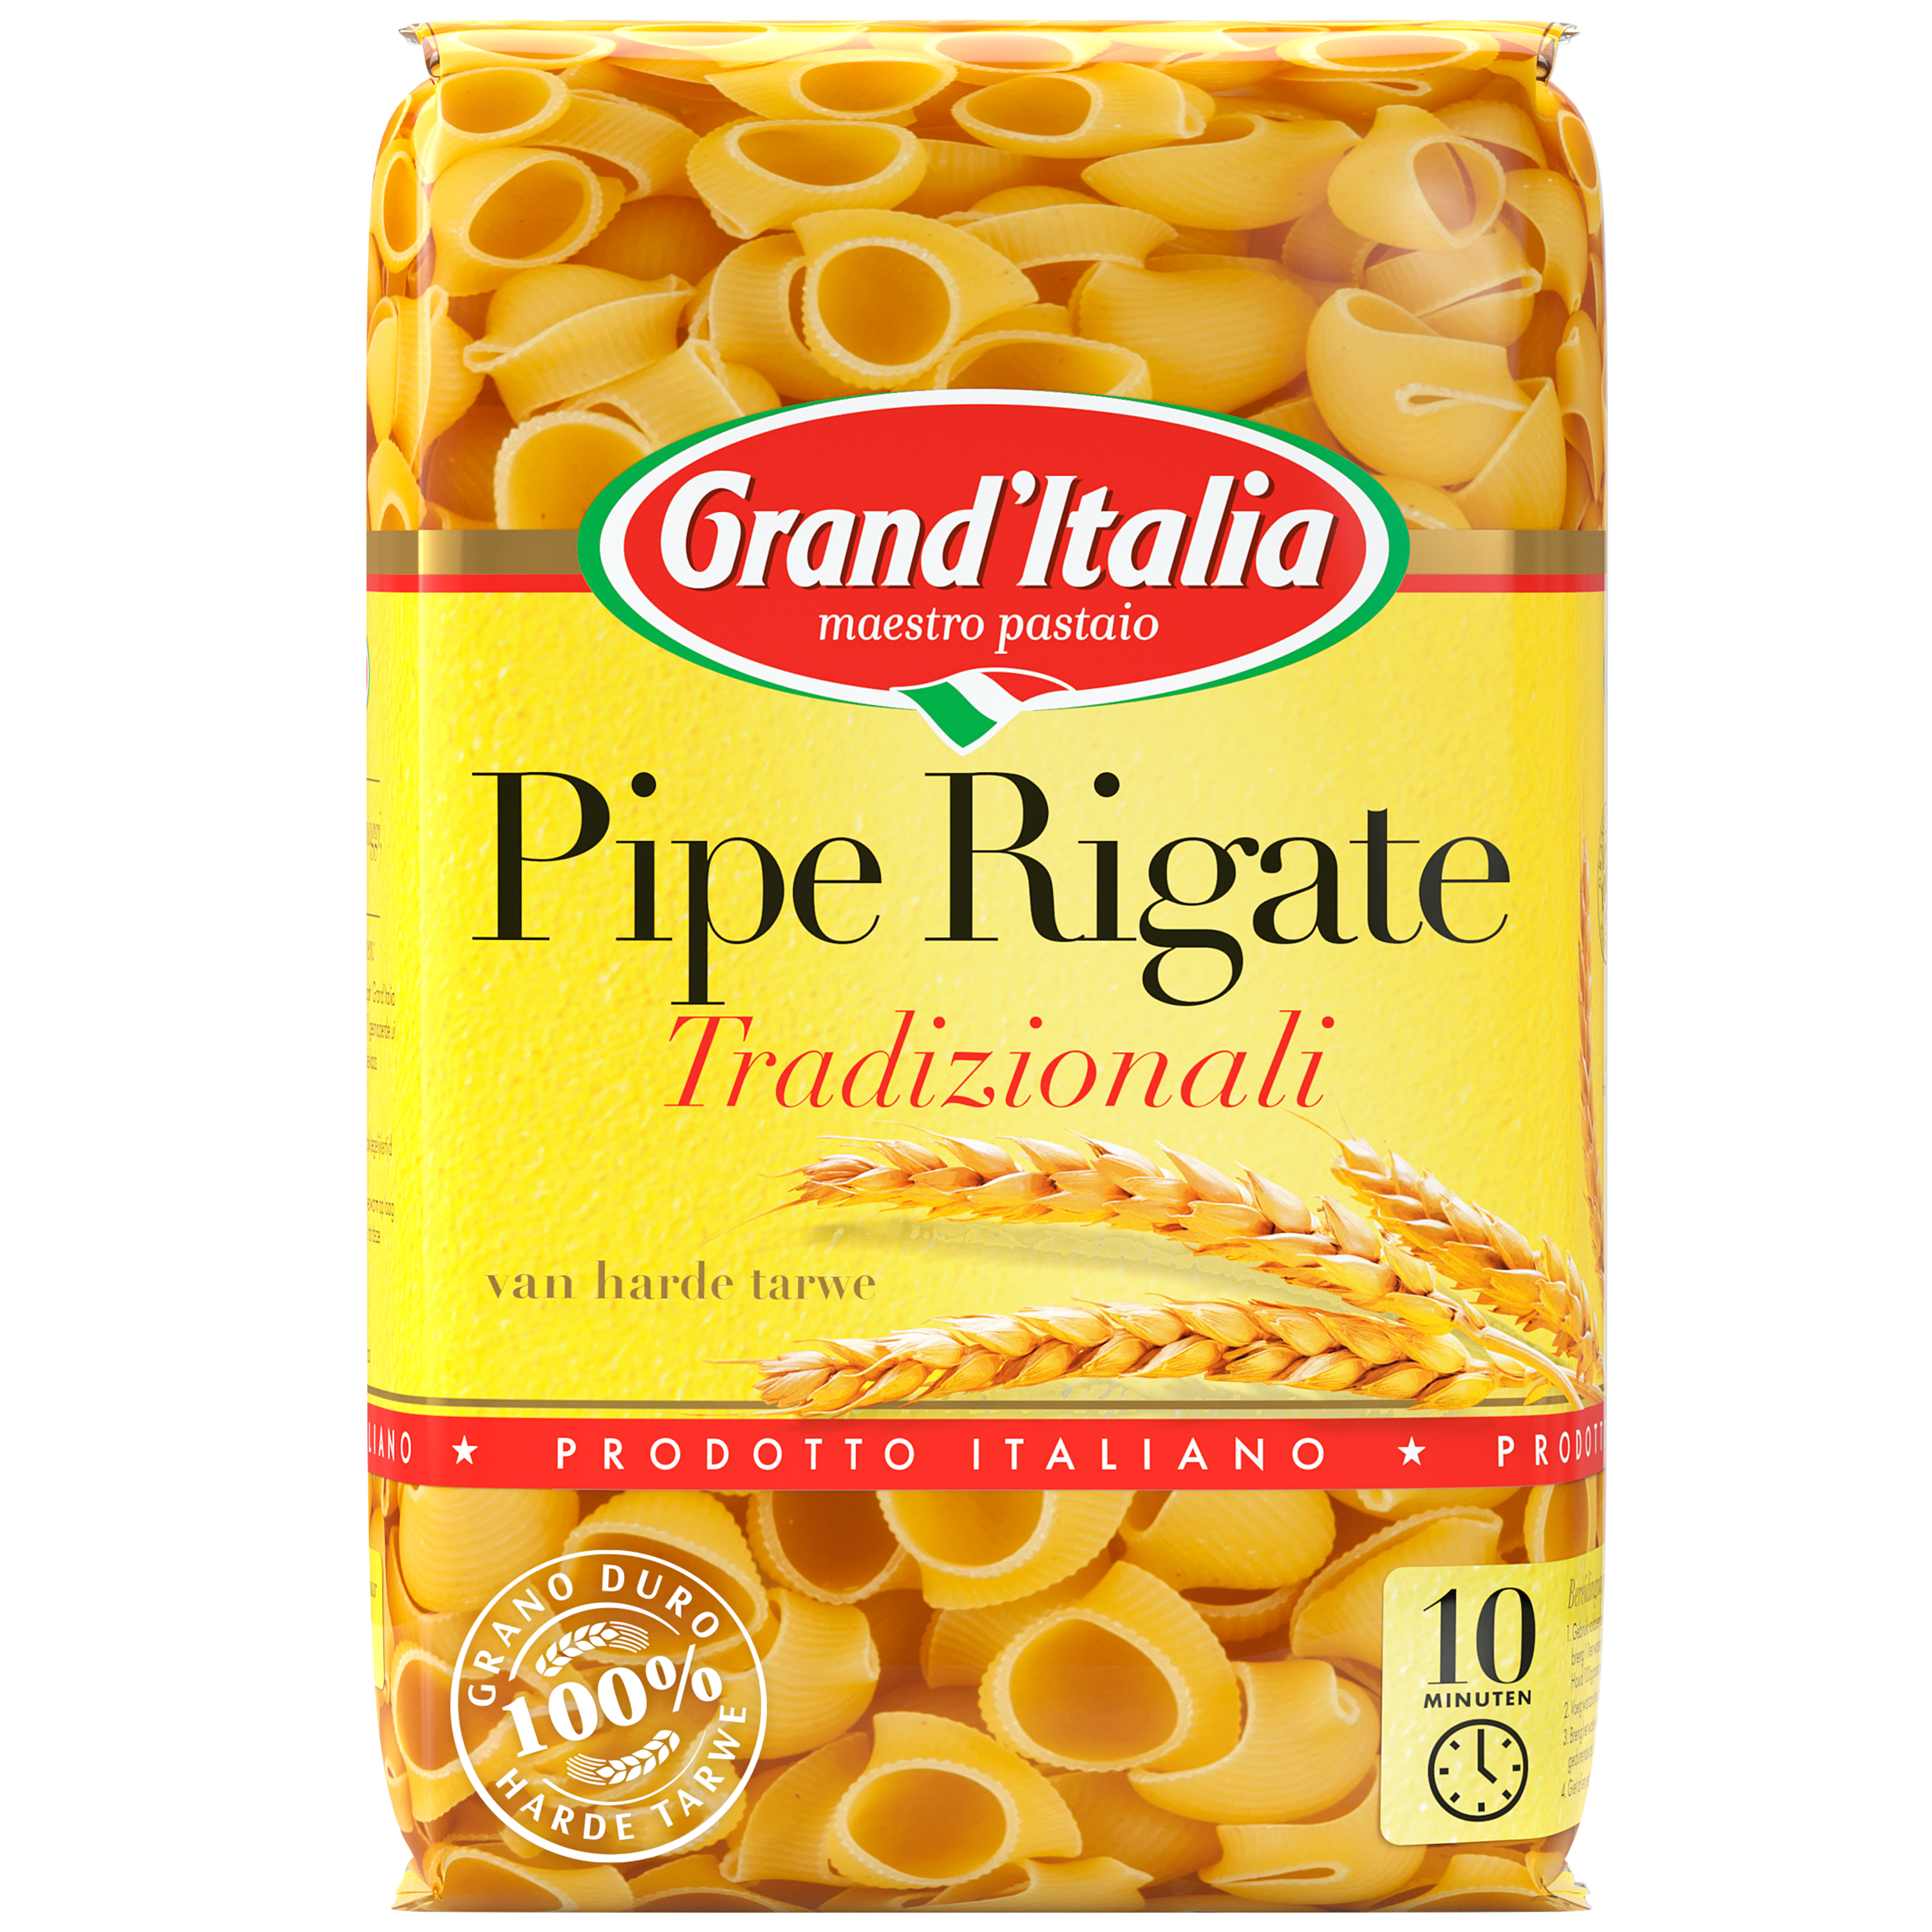 Pasta Pipe Rigate Tradizionali 500g Grand'Italia